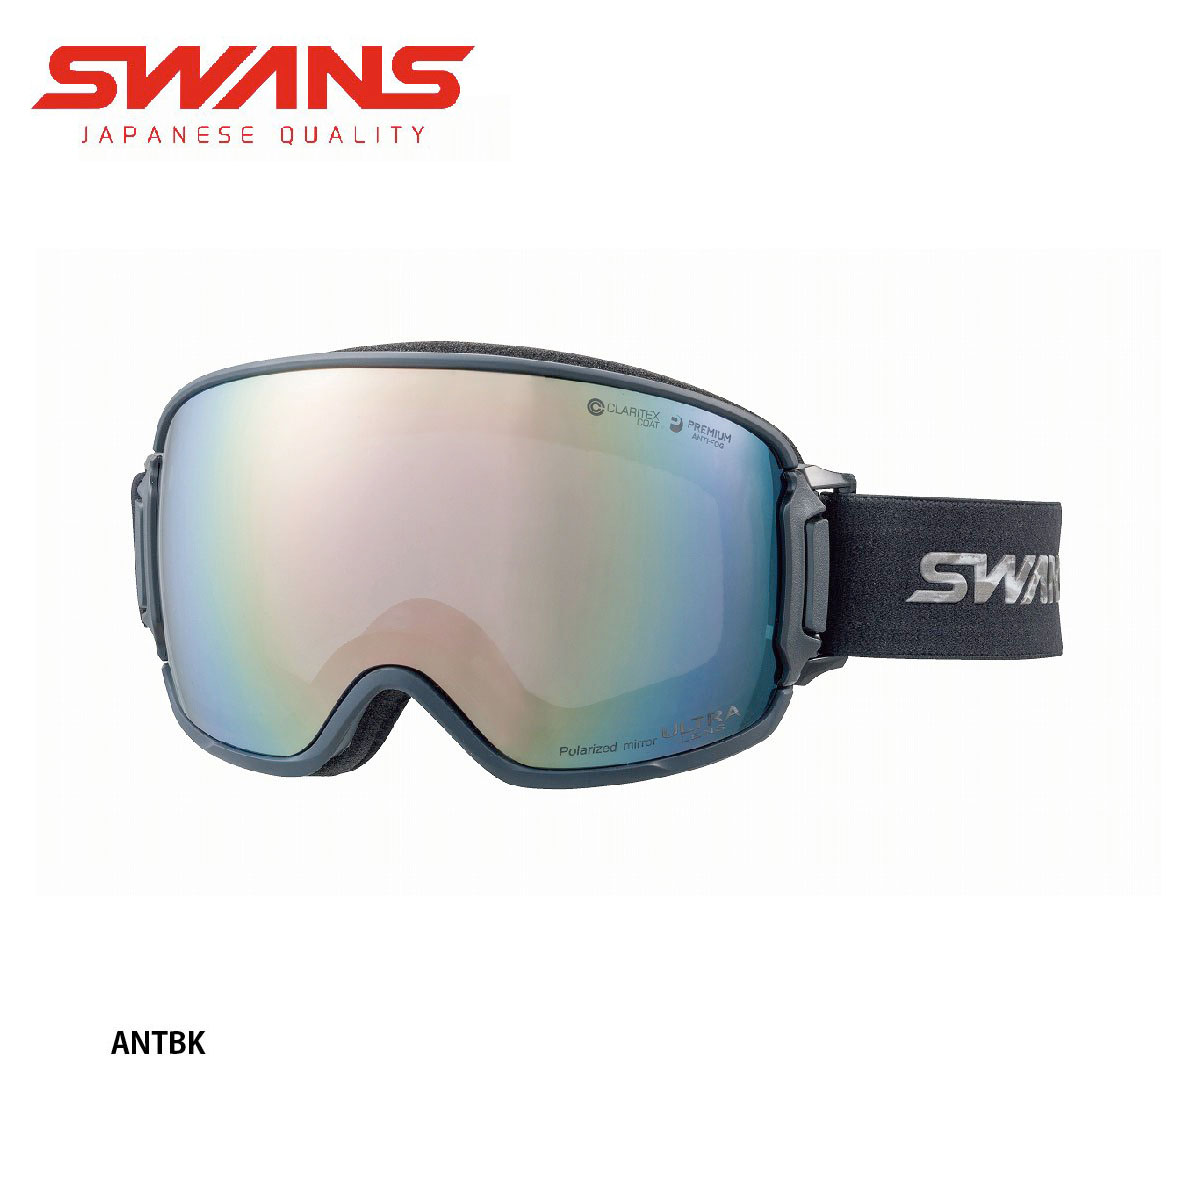 世界有名な SWANS スノーゴーグル RIDGELINE-C スキー・スノーボード